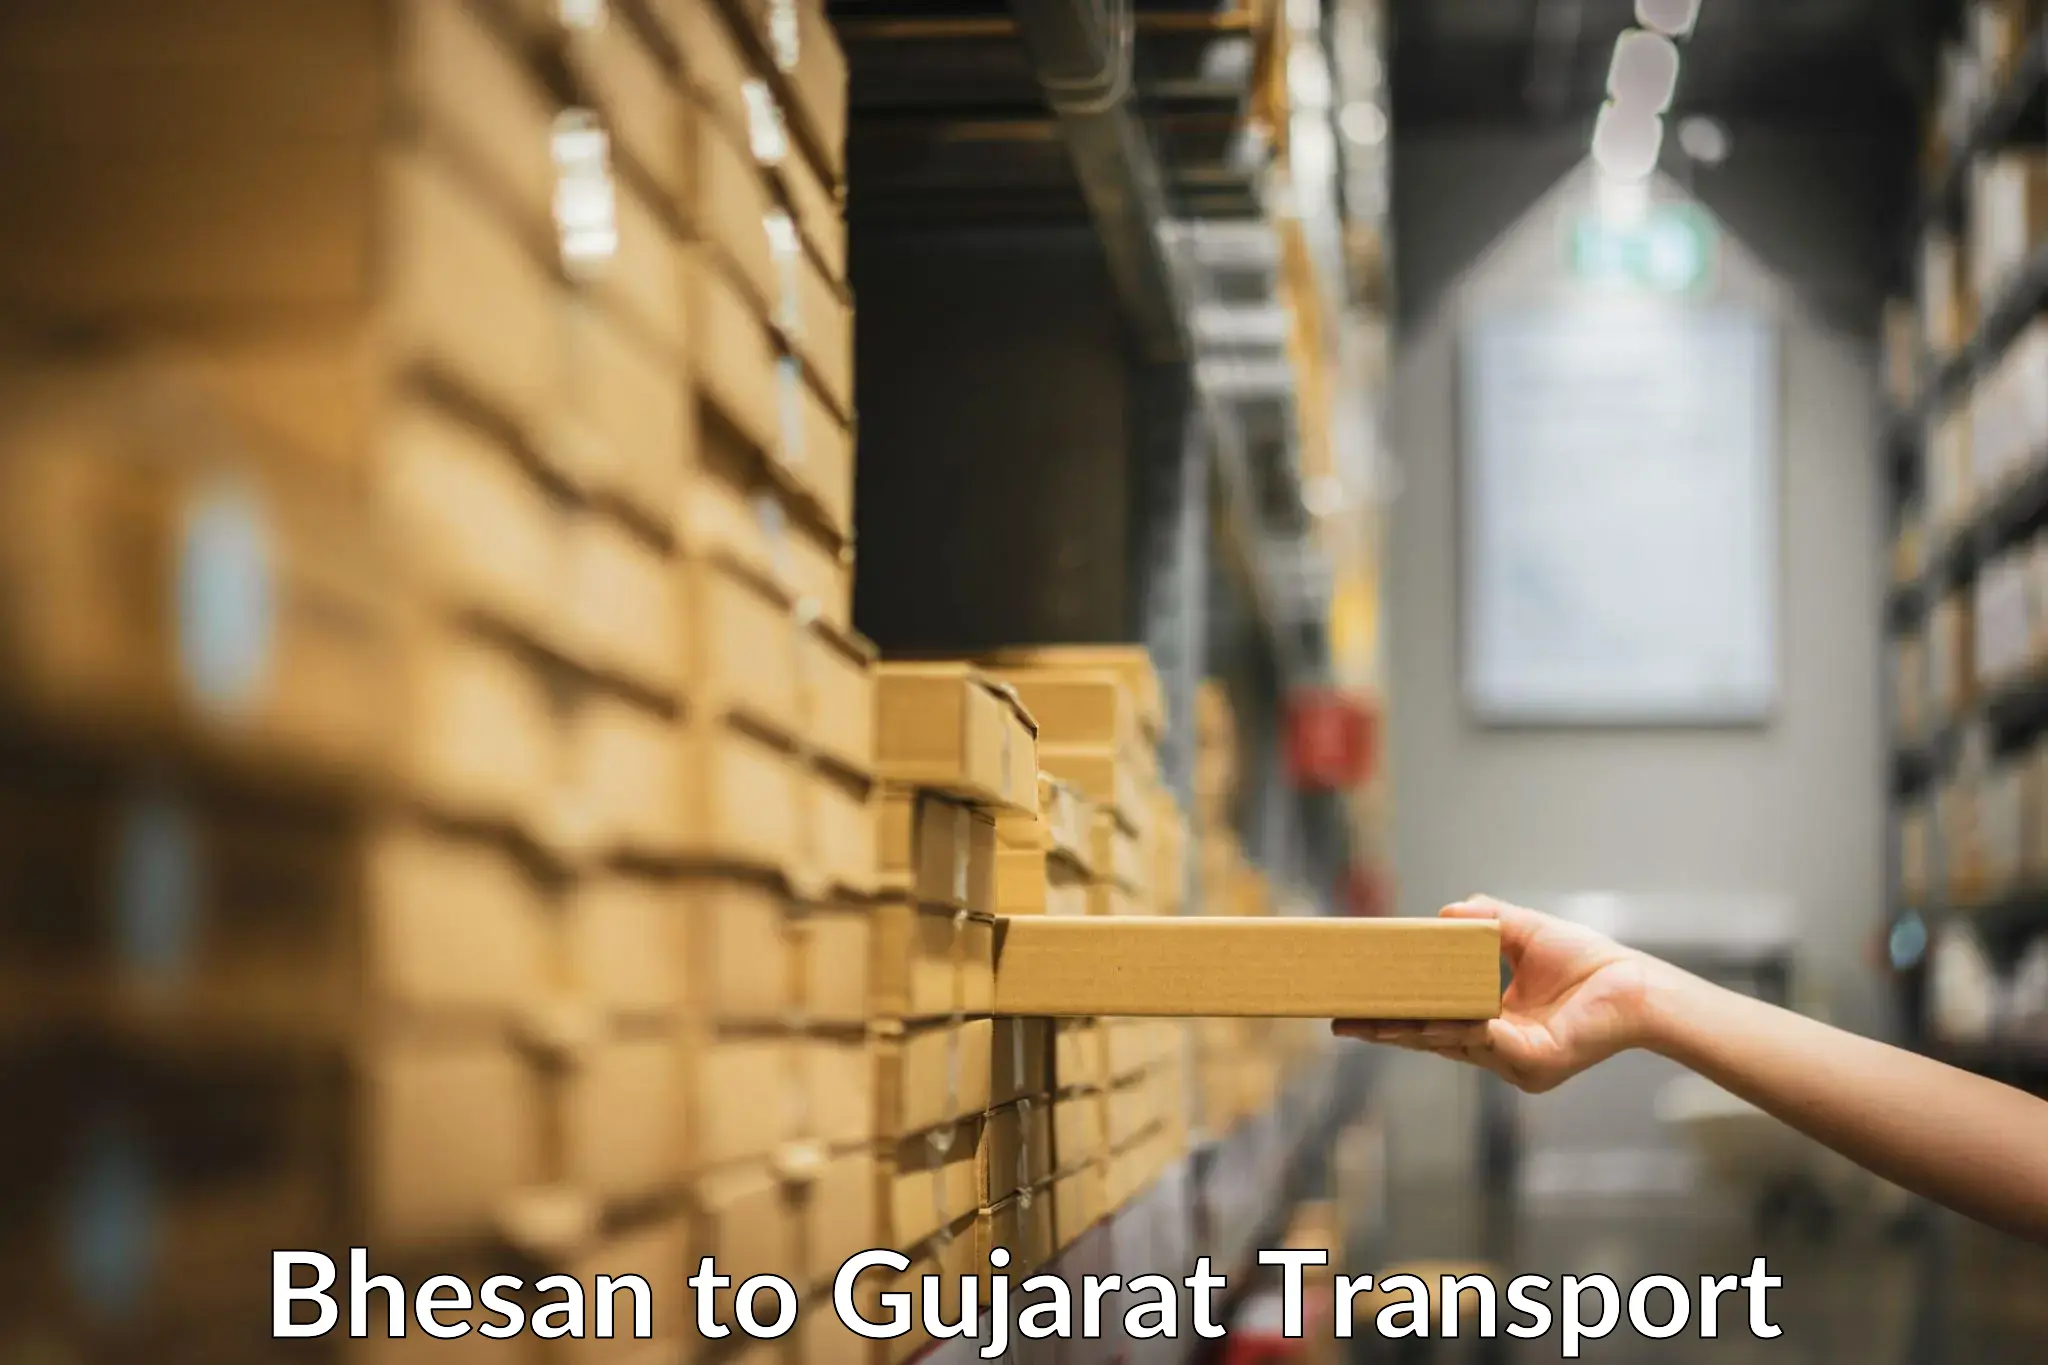 Shipping partner Bhesan to Gujarat